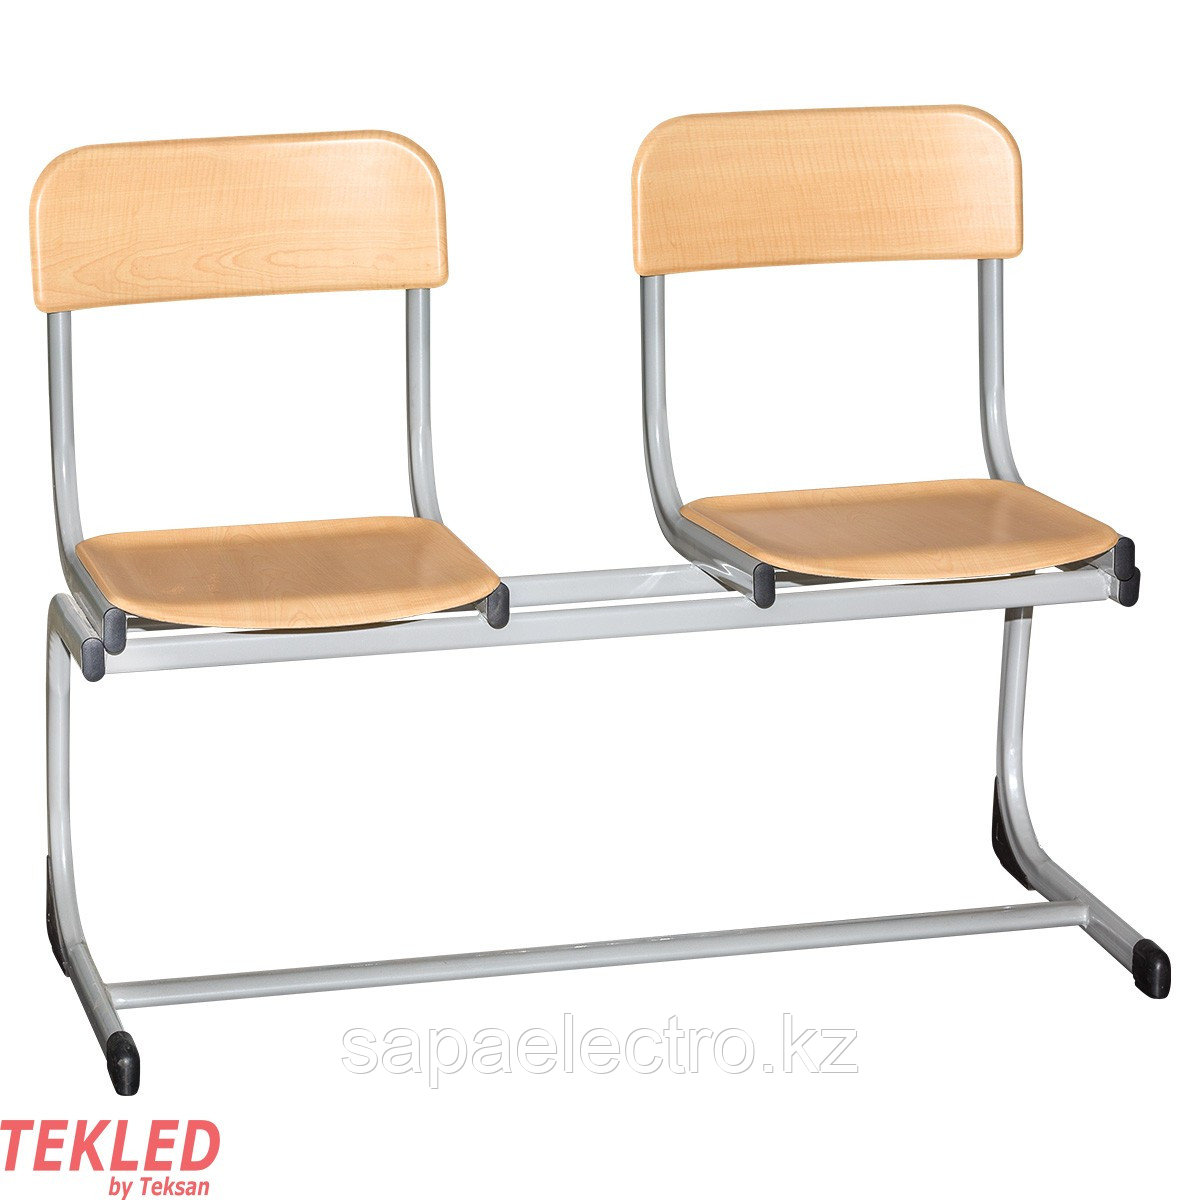 Школьные стулья 2LI (двойные) H-420мм Модель1 MGL (